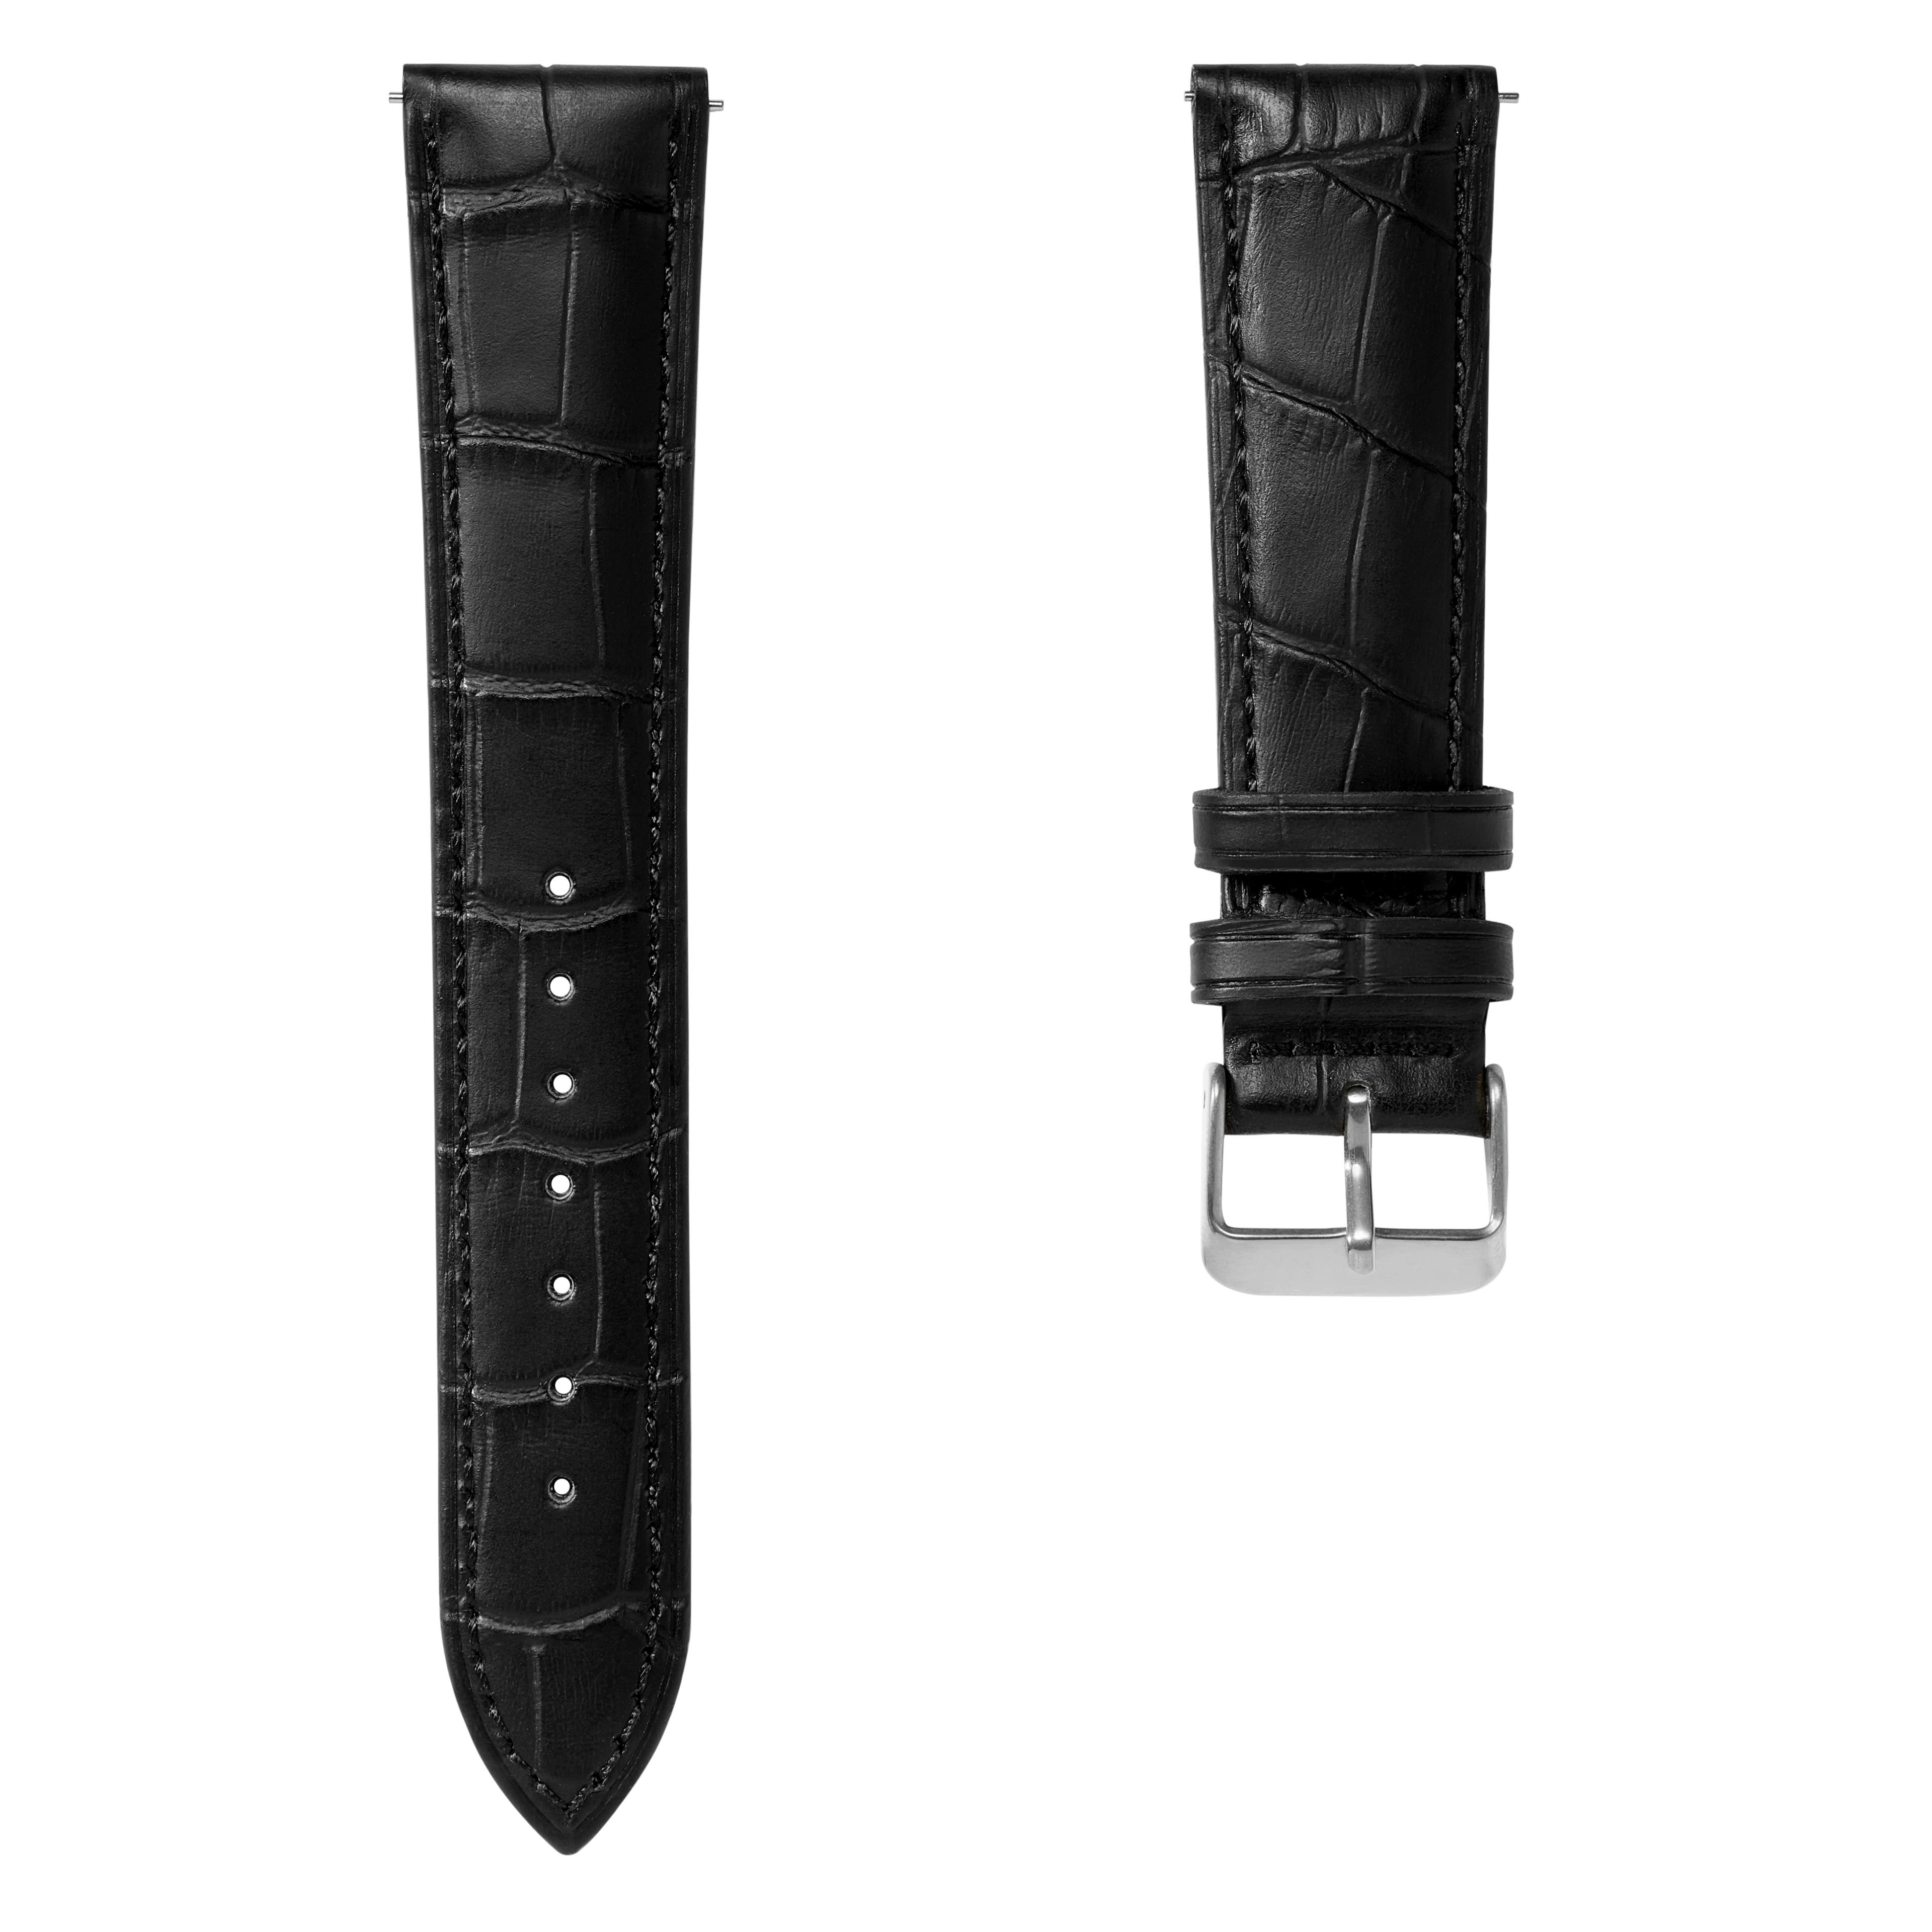 Czarny 21 mm skórzany pasek do zegarka z tłoczonym wzorem krokodyla ze srebrzystą klamrą – szybki w zmianie